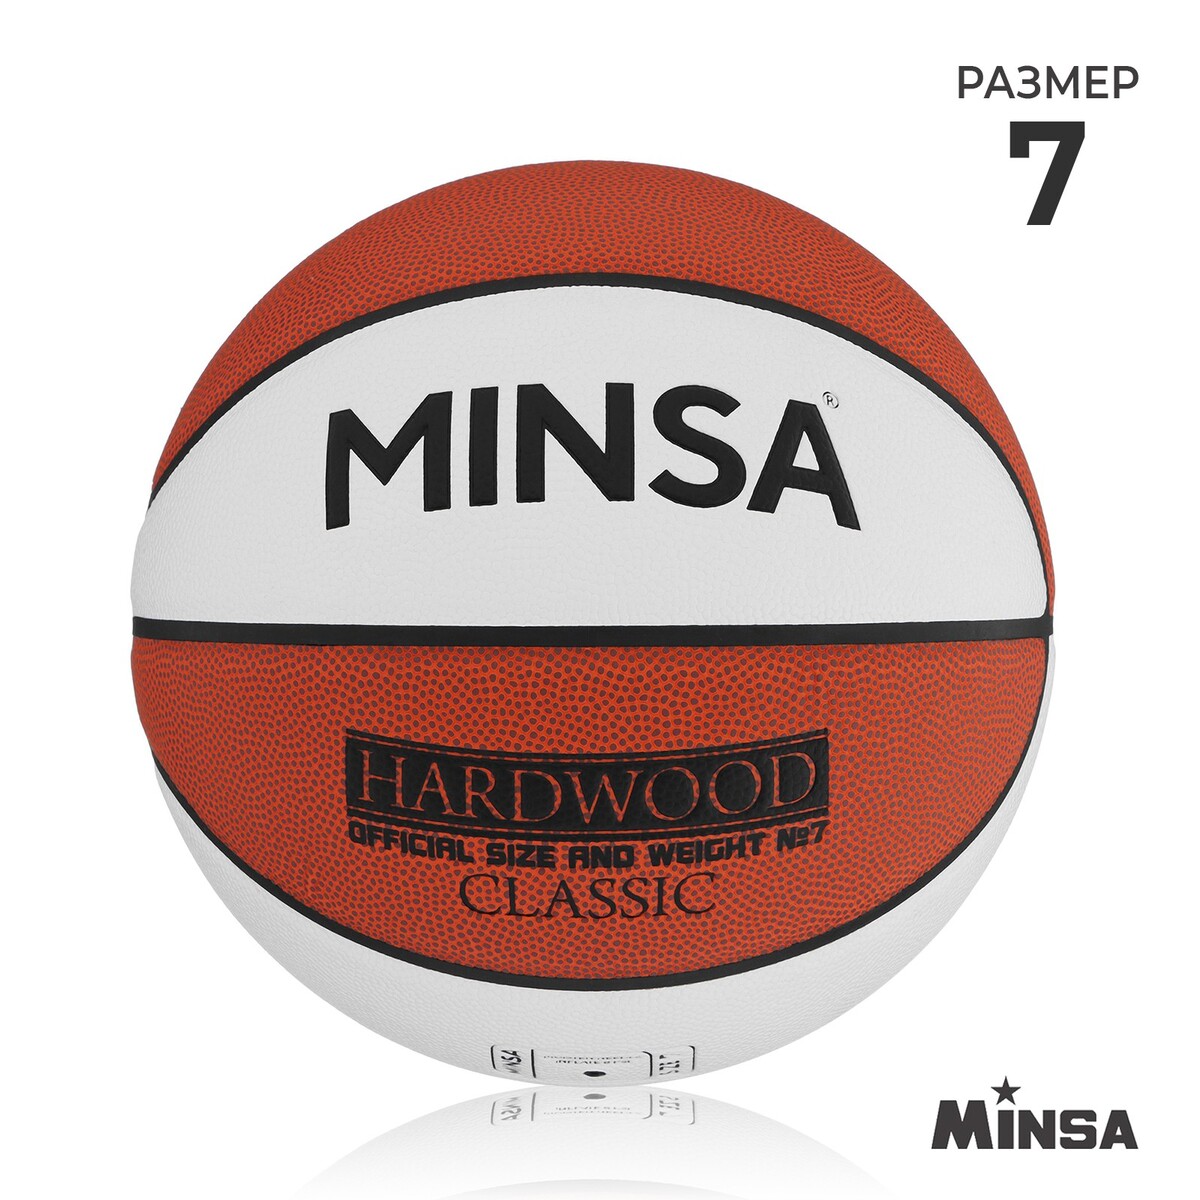 Баскетбольный мяч minsa hardwood classic, pu, клееный, 8 панелей, р. 7 мяч баскетбольный minsa sport пвх клееный 8 панелей р 5